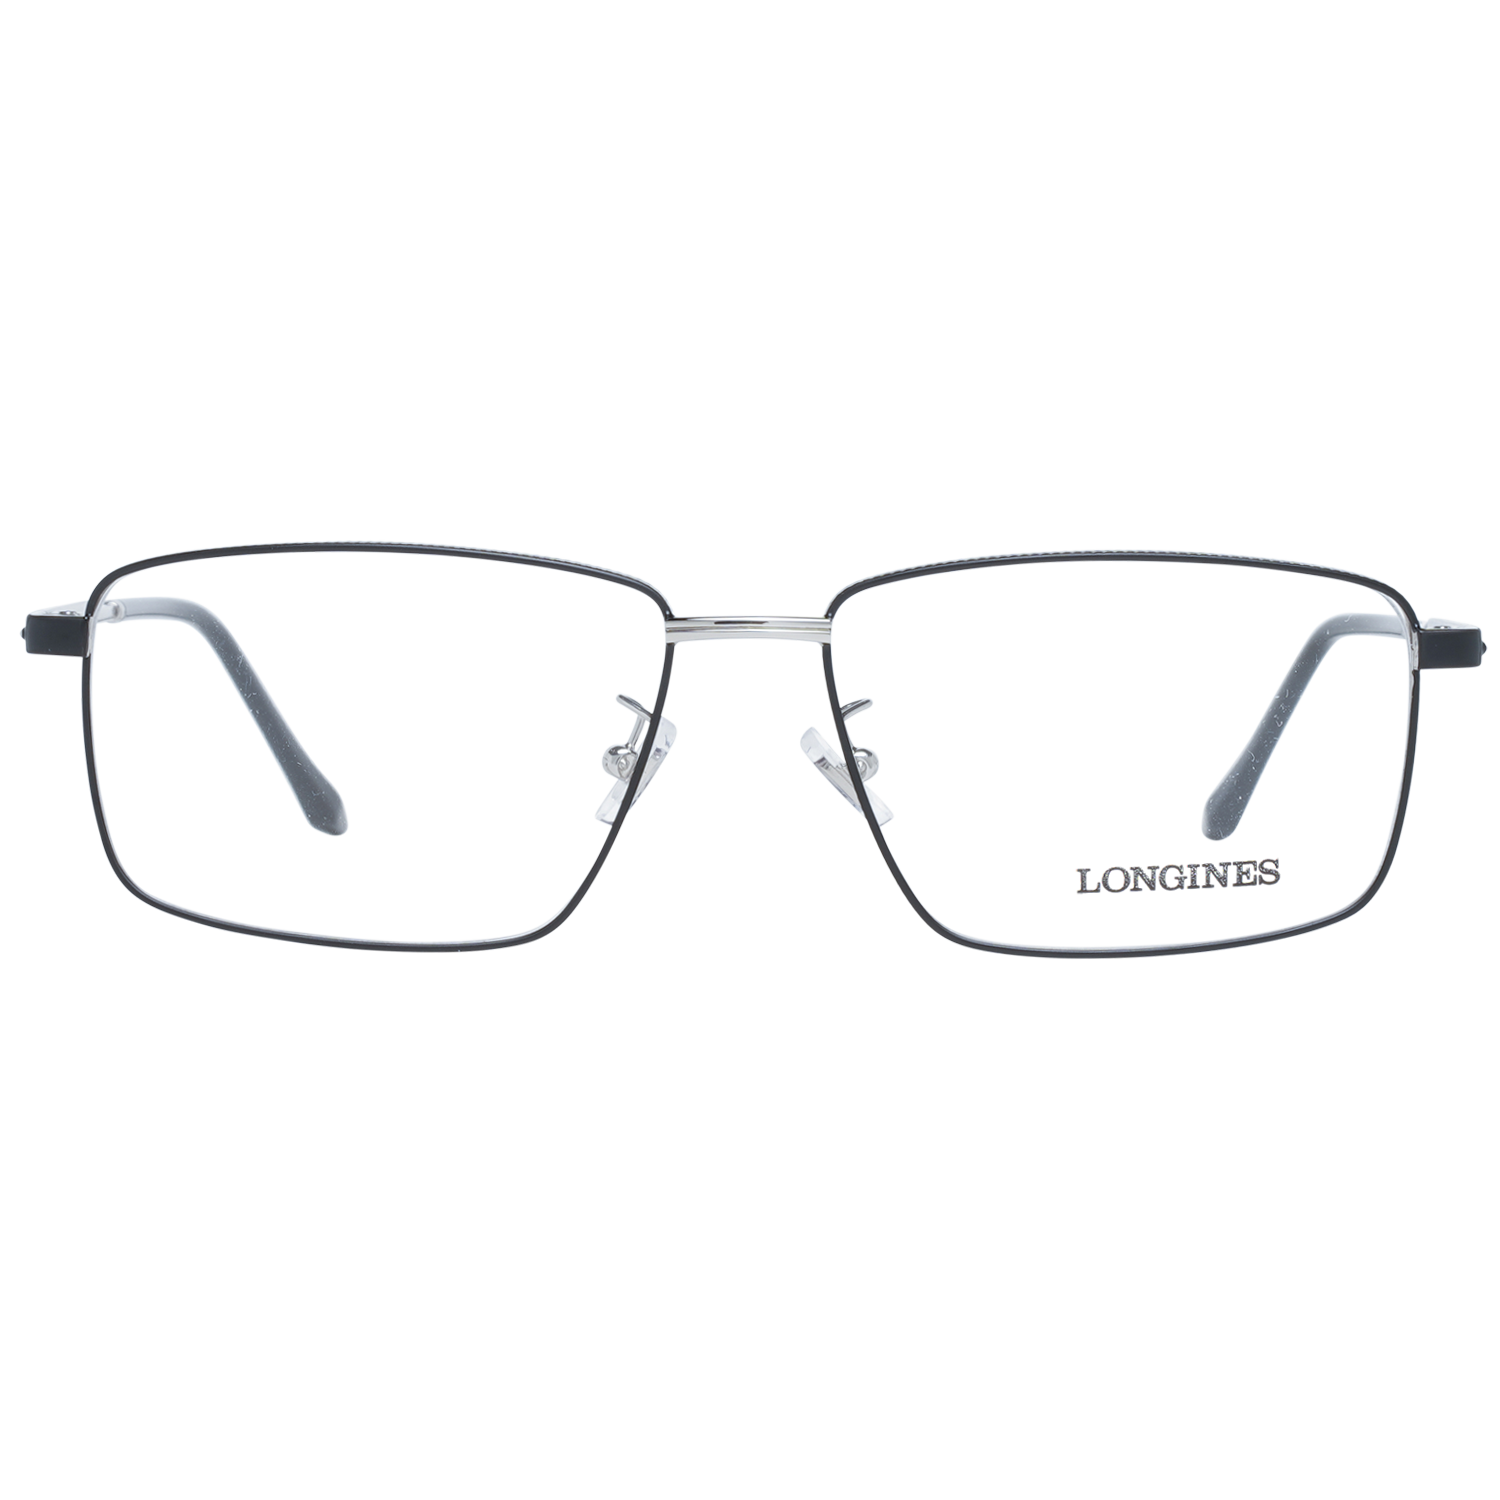 Longines Frames Longines Optical Frame LG5017-H 002 57 Eyeglasses Eyewear UK USA Australia 